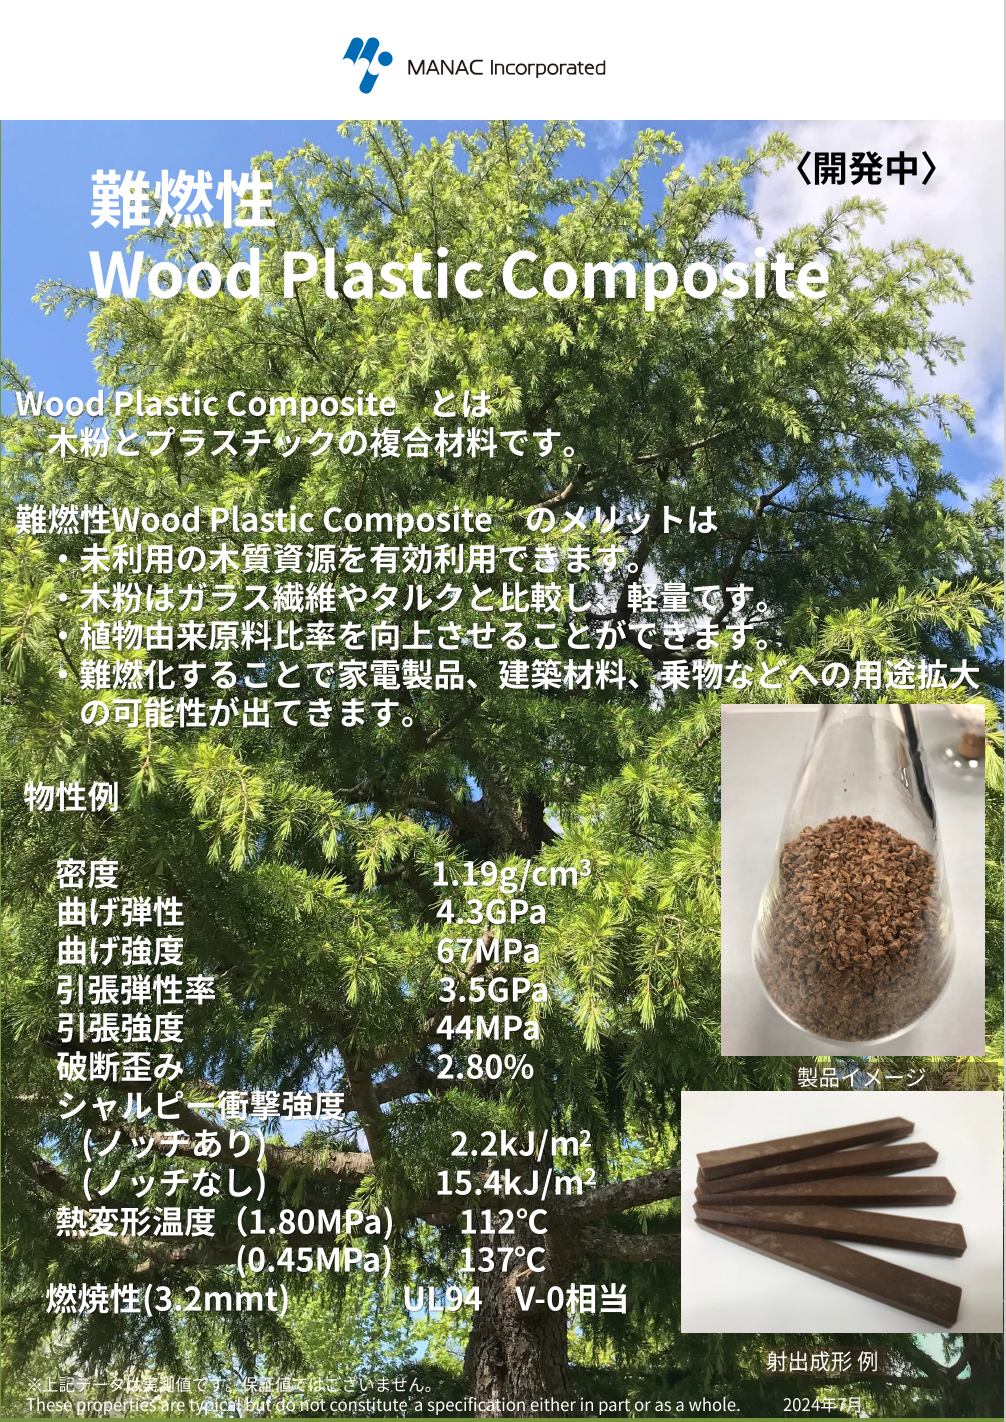 カタログ_難燃性 Wood Plastic Composite